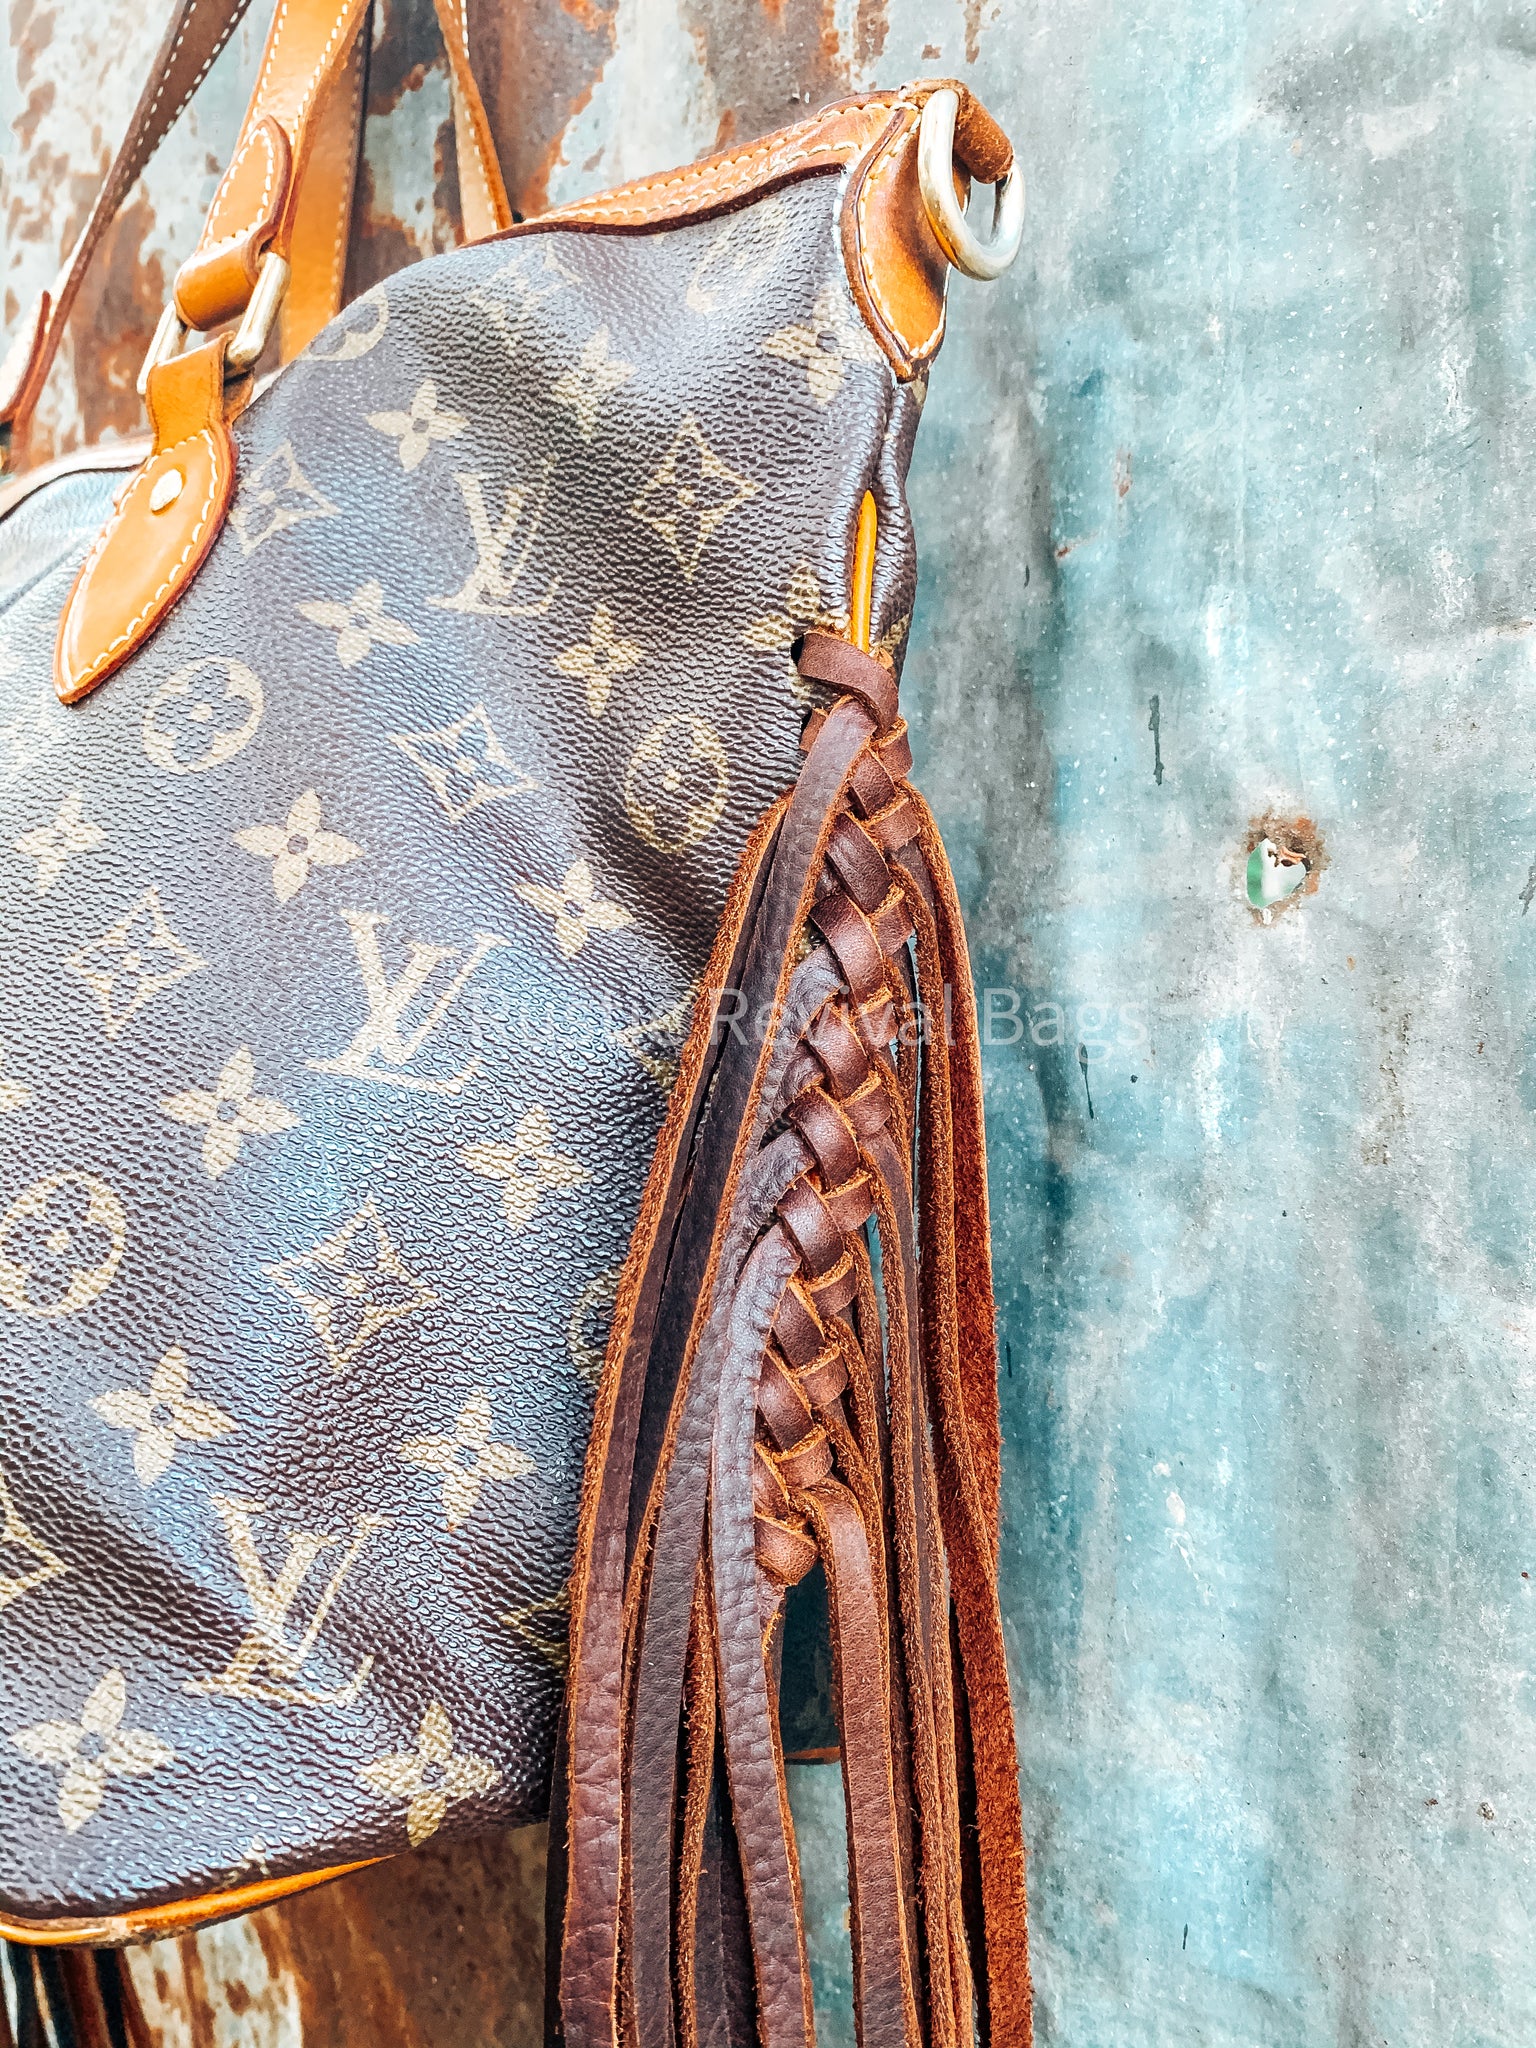 The Lydia Shoulder Bag – Rustic Revival Bags